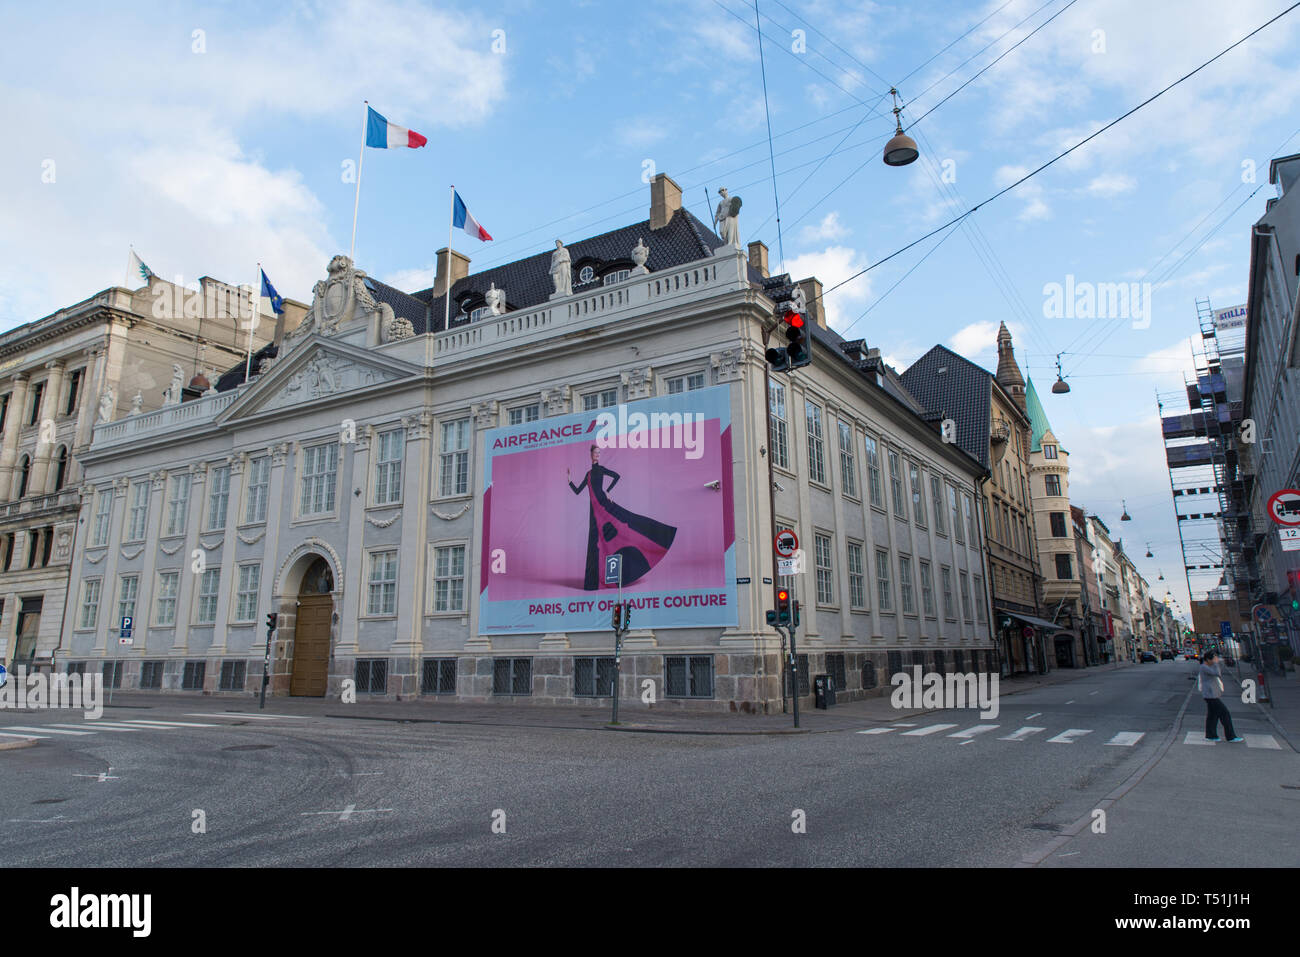 Eine Air-France horten auf der Französischen Botschaft wirbt Paris als die Stadt der Haute Couture, Kopenhagen, Dänemark. Stockfoto